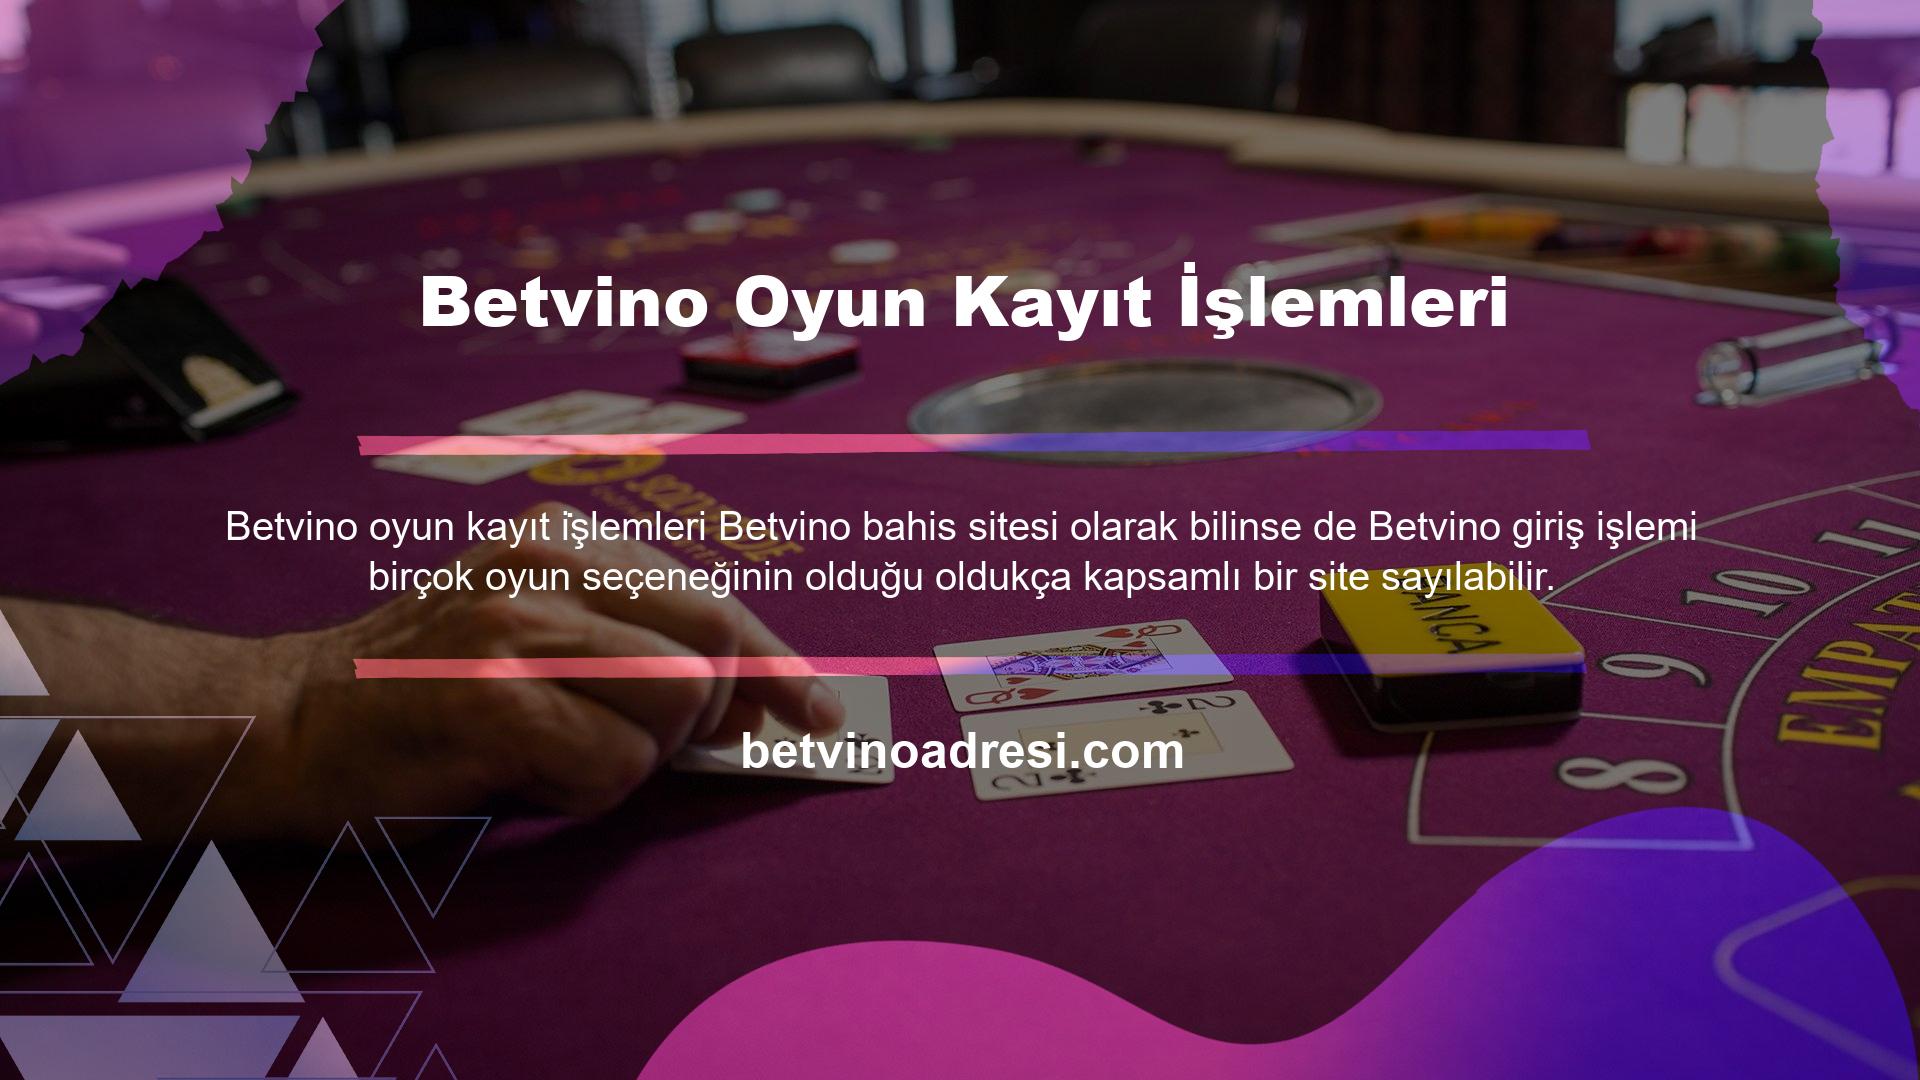 Betvino oyun seçeneklerine bakarsanız Casino, Canlı Casino ve Canlı Bingo gibi seçeneklerin listelendiğini göreceksiniz